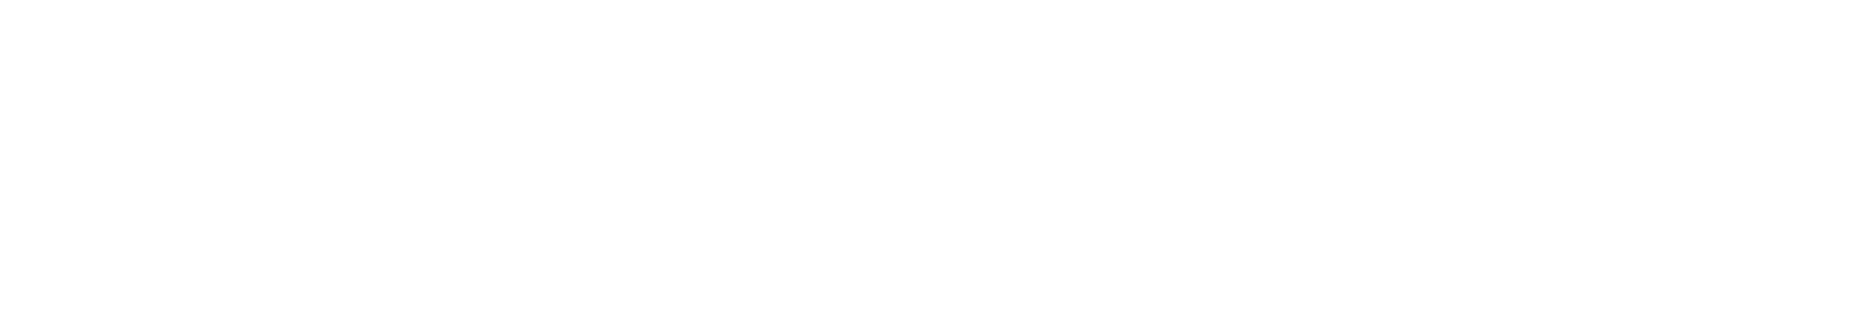 dekbedden.nl logo